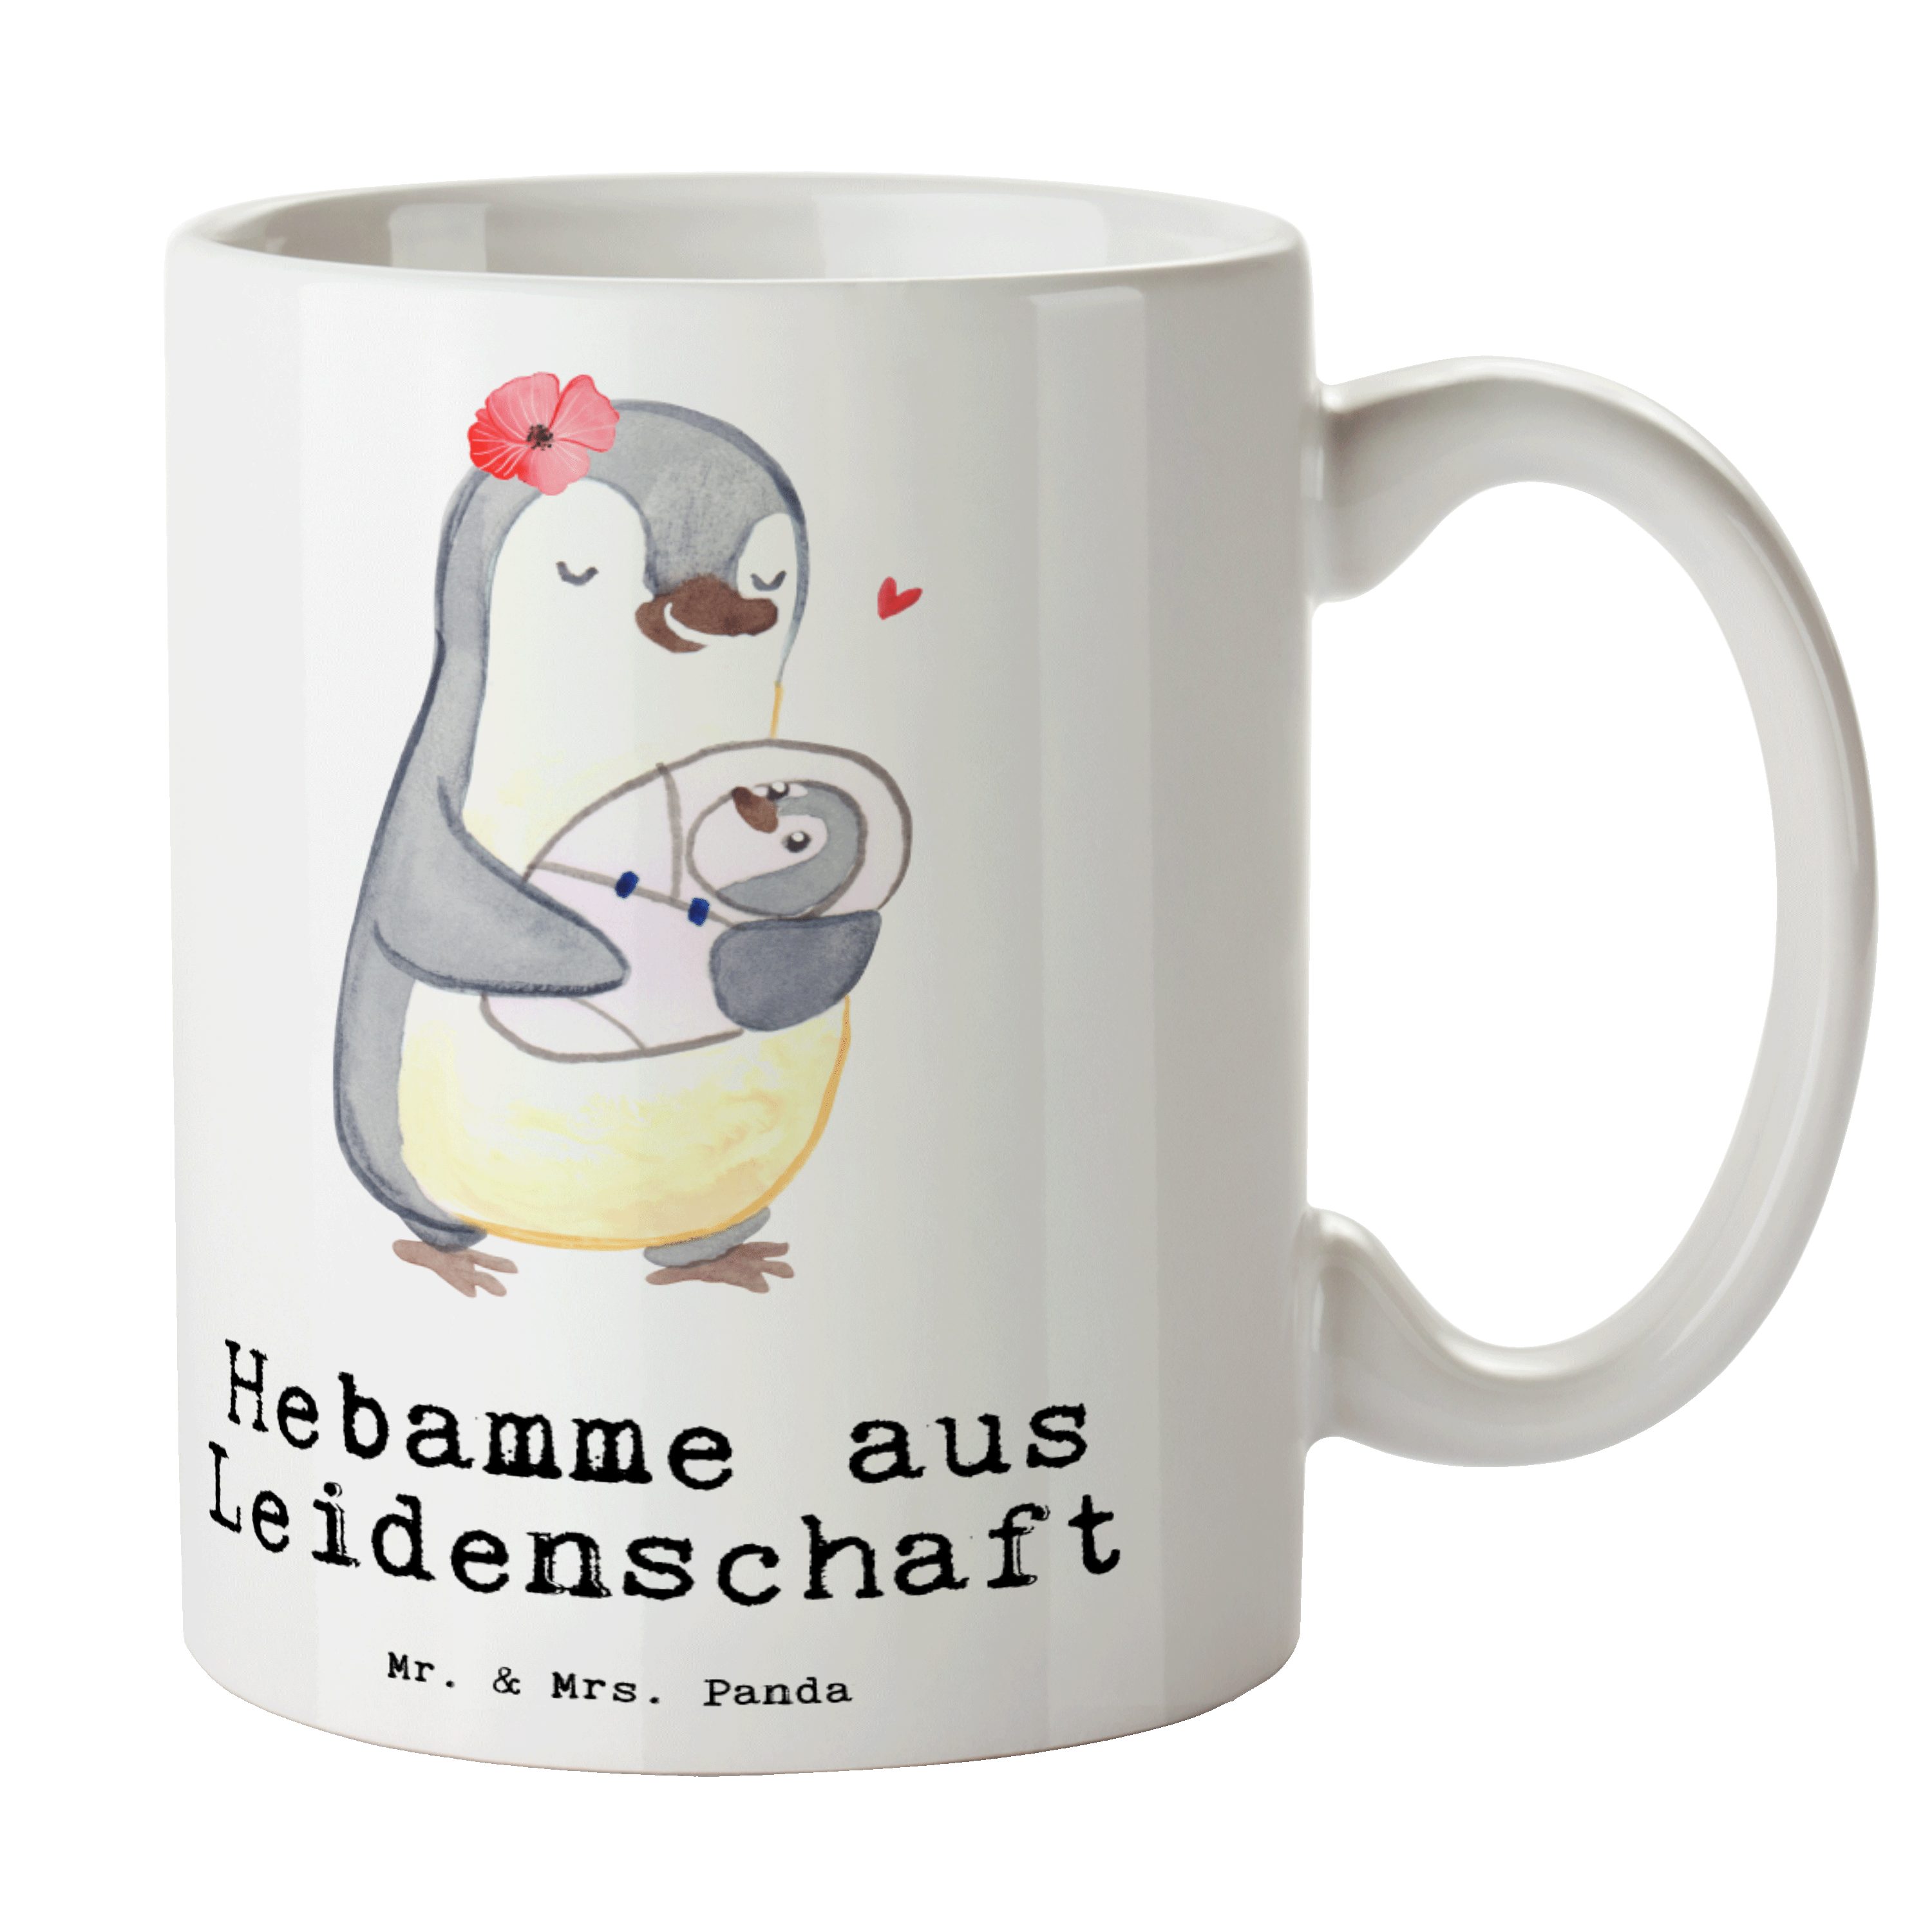 - Leidenschaft aus Mrs. Jubiläum, Panda Mr. - Hebamme & Geschenk, Geburtshelfer, Tasse Keramik Weiß